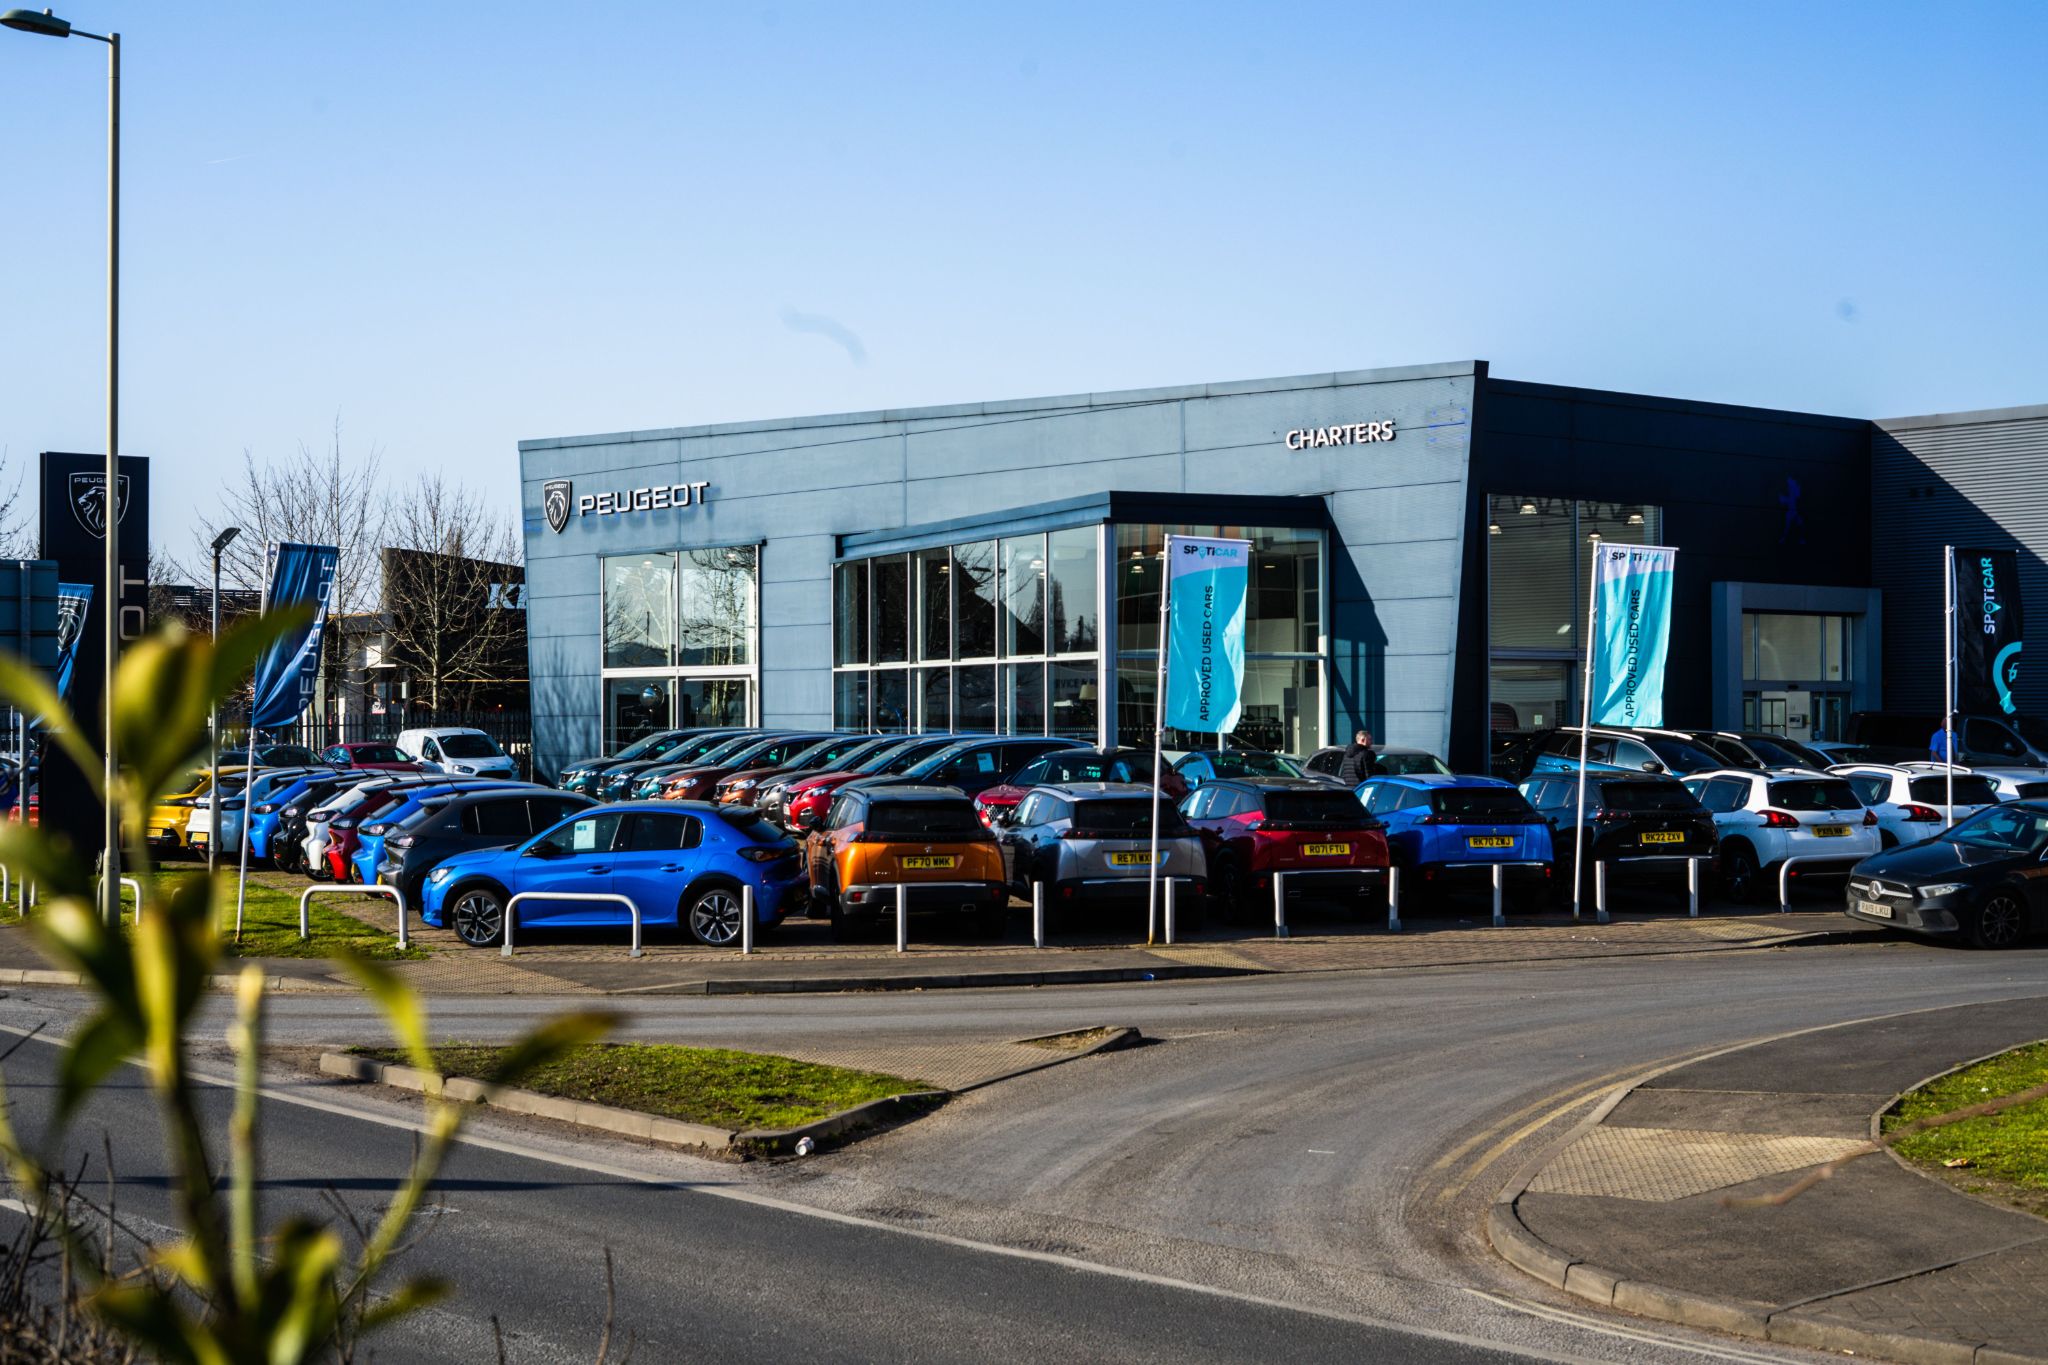 Charters Peugeot Aldershot, Car dealership in Aldershot